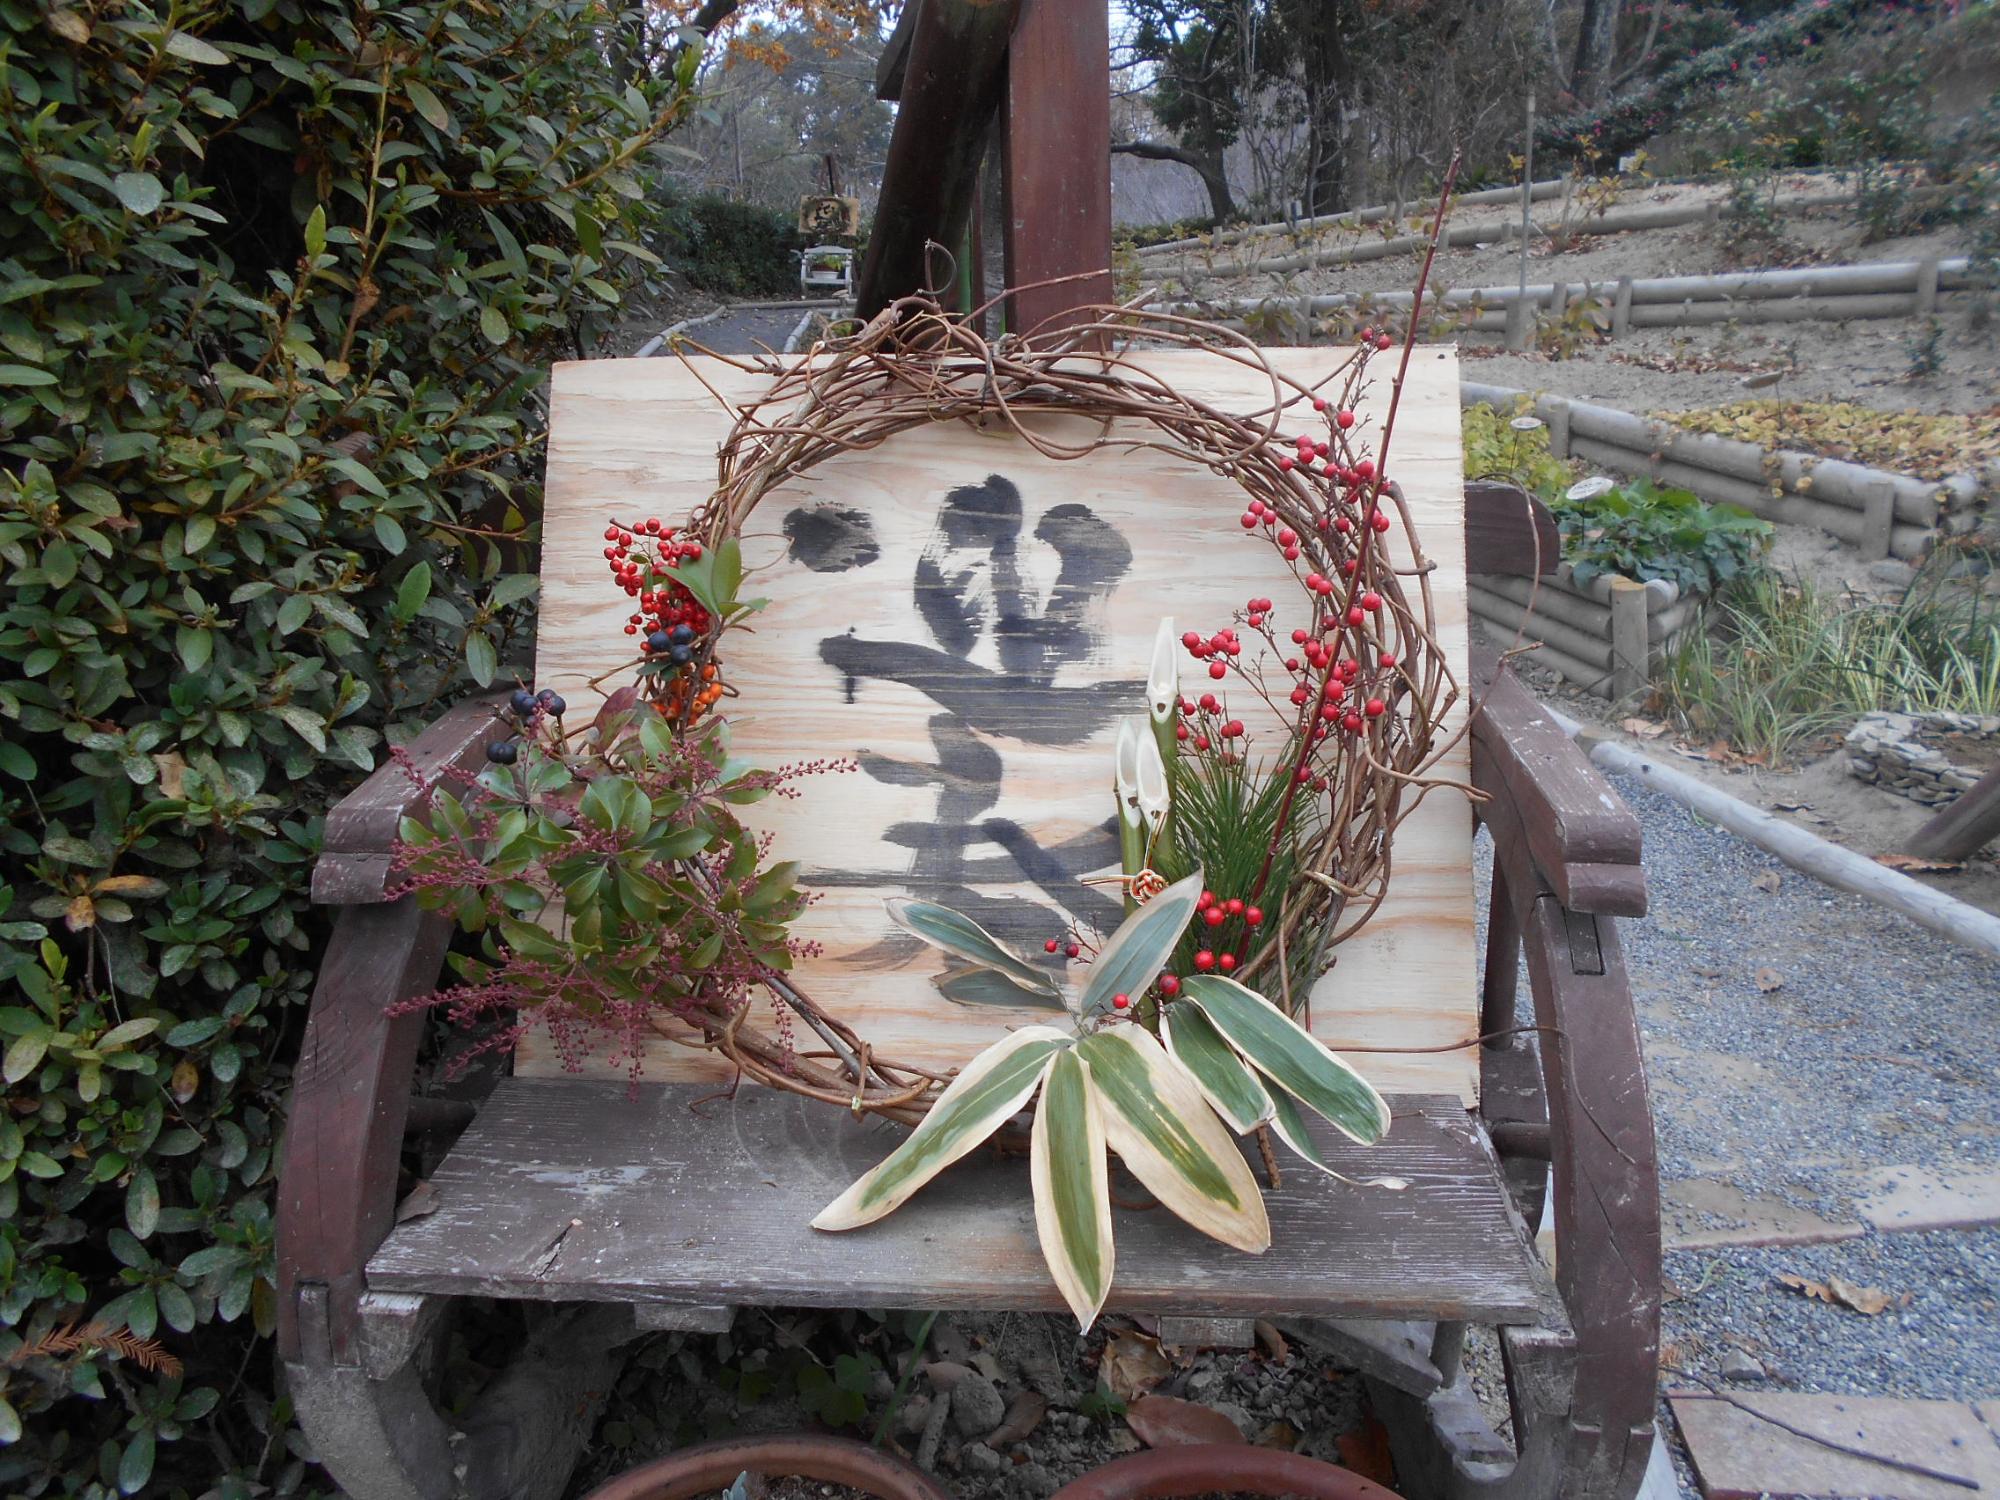 薬草園の「ハーブのこみち」の2か所に、正月飾りを作りました。よい年を迎えたいですね。